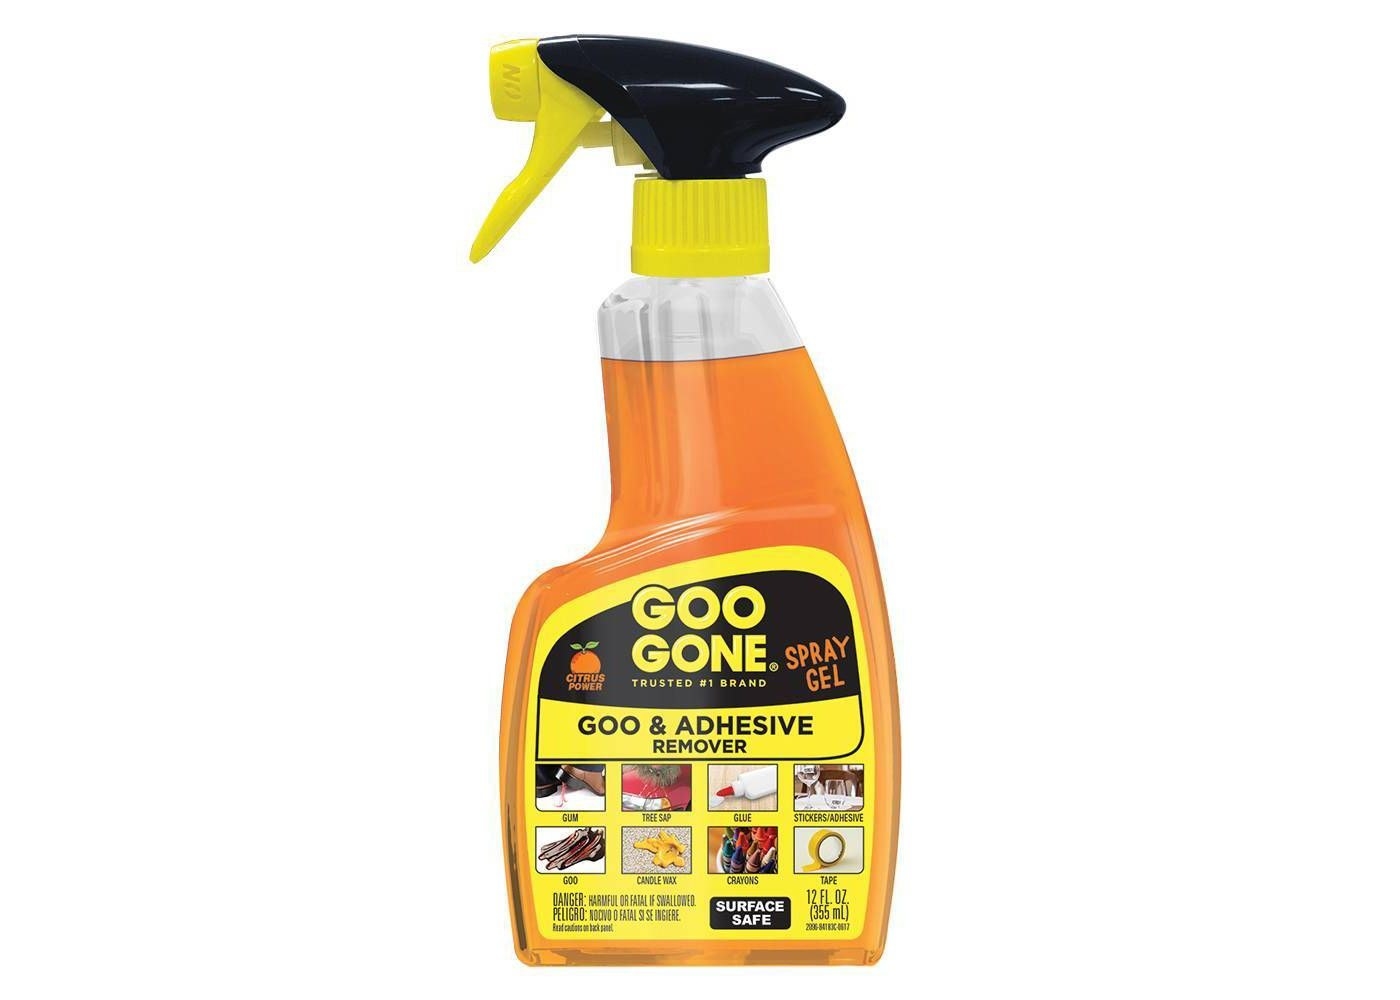 Bottle of goo remover